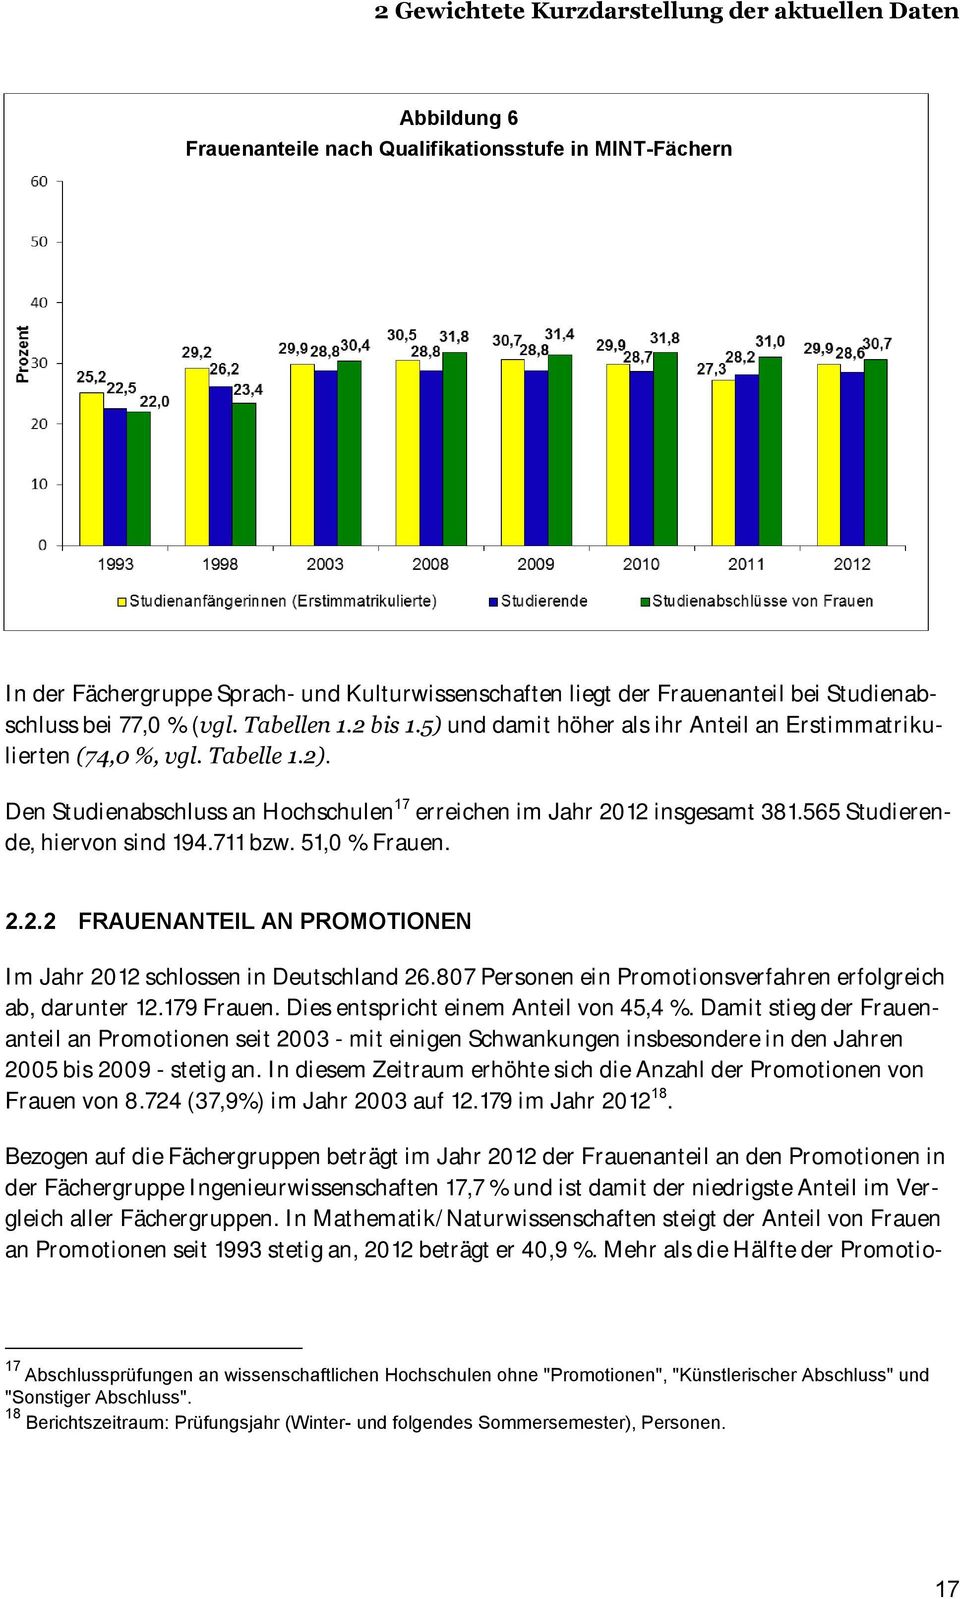 Den Studienabschluss an Hochschulen 17 erreichen im Jahr 2012 insgesamt 381.565 Studierende, hiervon sind 194.711 bzw. 51,0 %. 2.2.2 FRAUENANTEIL AN PROMOTIONEN Im Jahr 2012 schlossen in Deutschland 26.